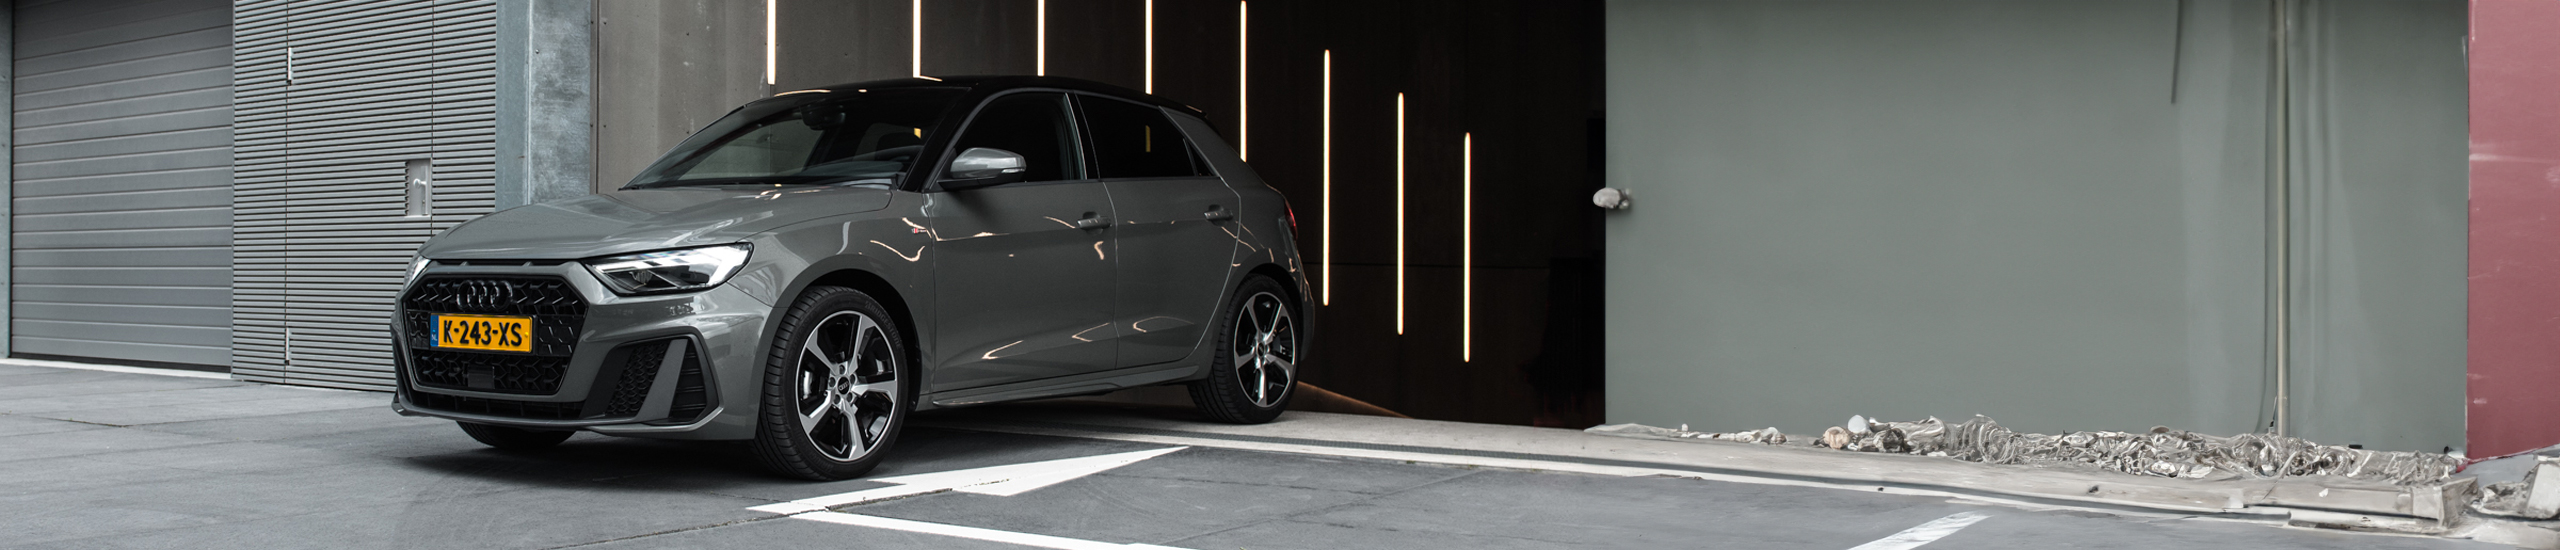 Met zijn karakteristieke, vlotte design pakt de tweede generatie van de A1 de lijnen op van de eerste Audi quattro. 